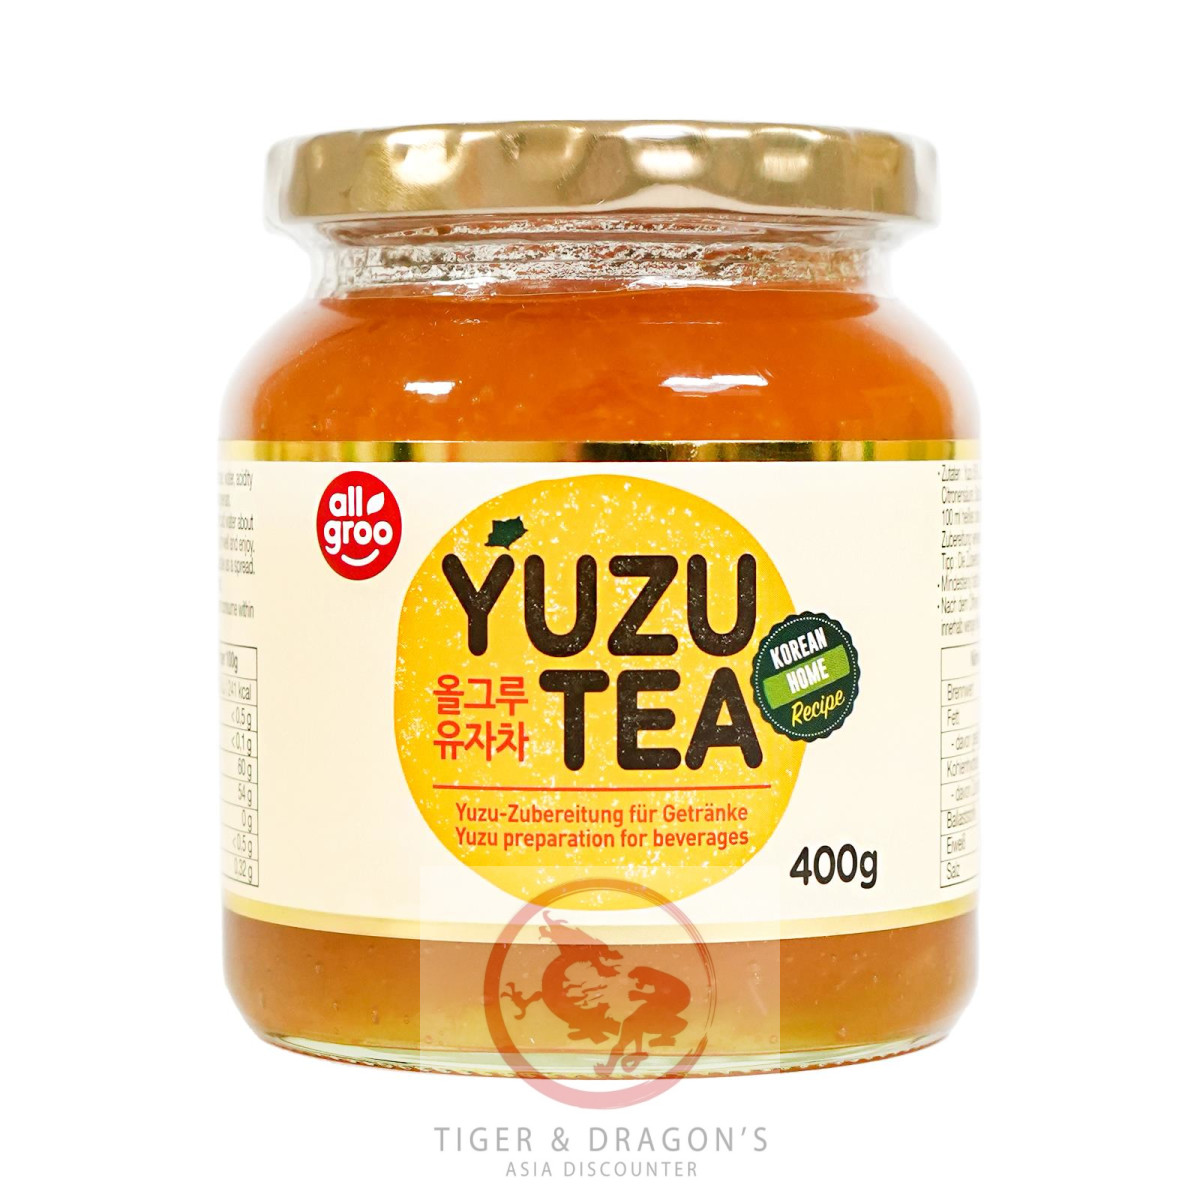 All Groo Yuzu Zubereitung für Getränke Yuzu Tea...